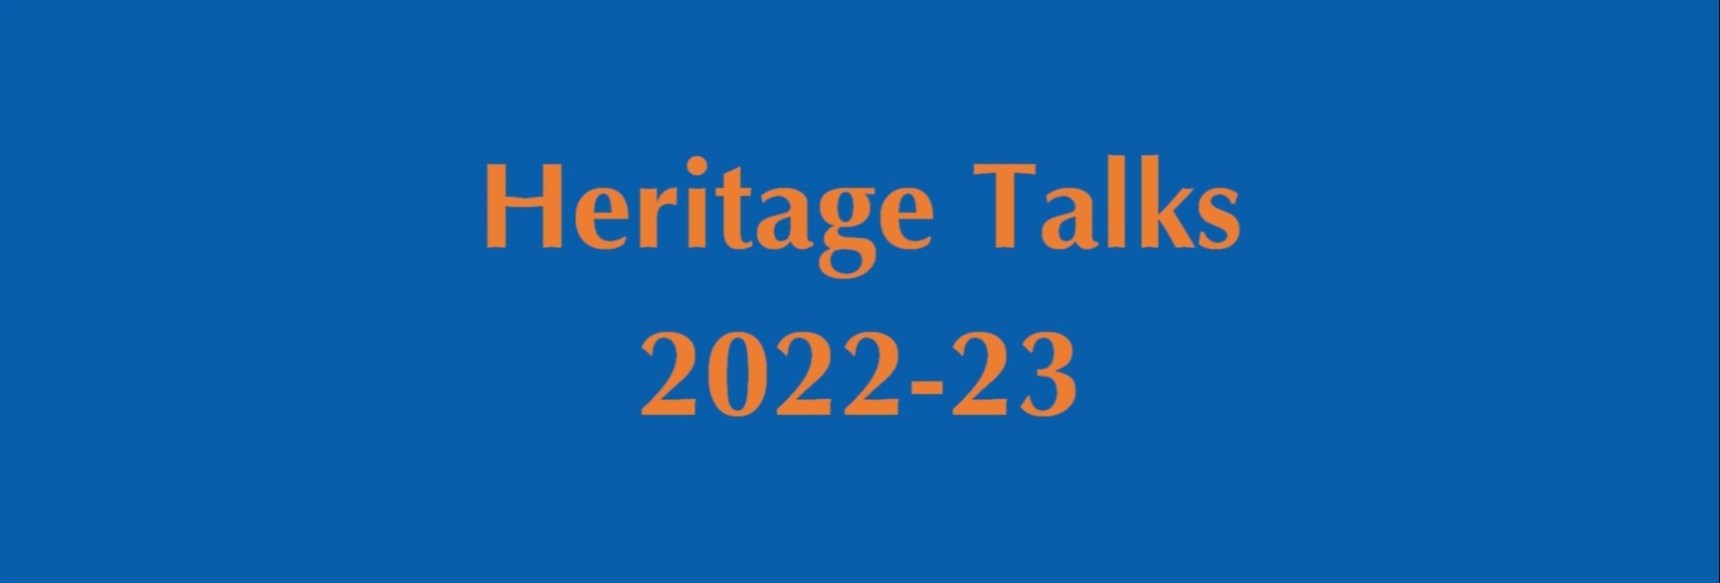 HeritageTalks-22-23